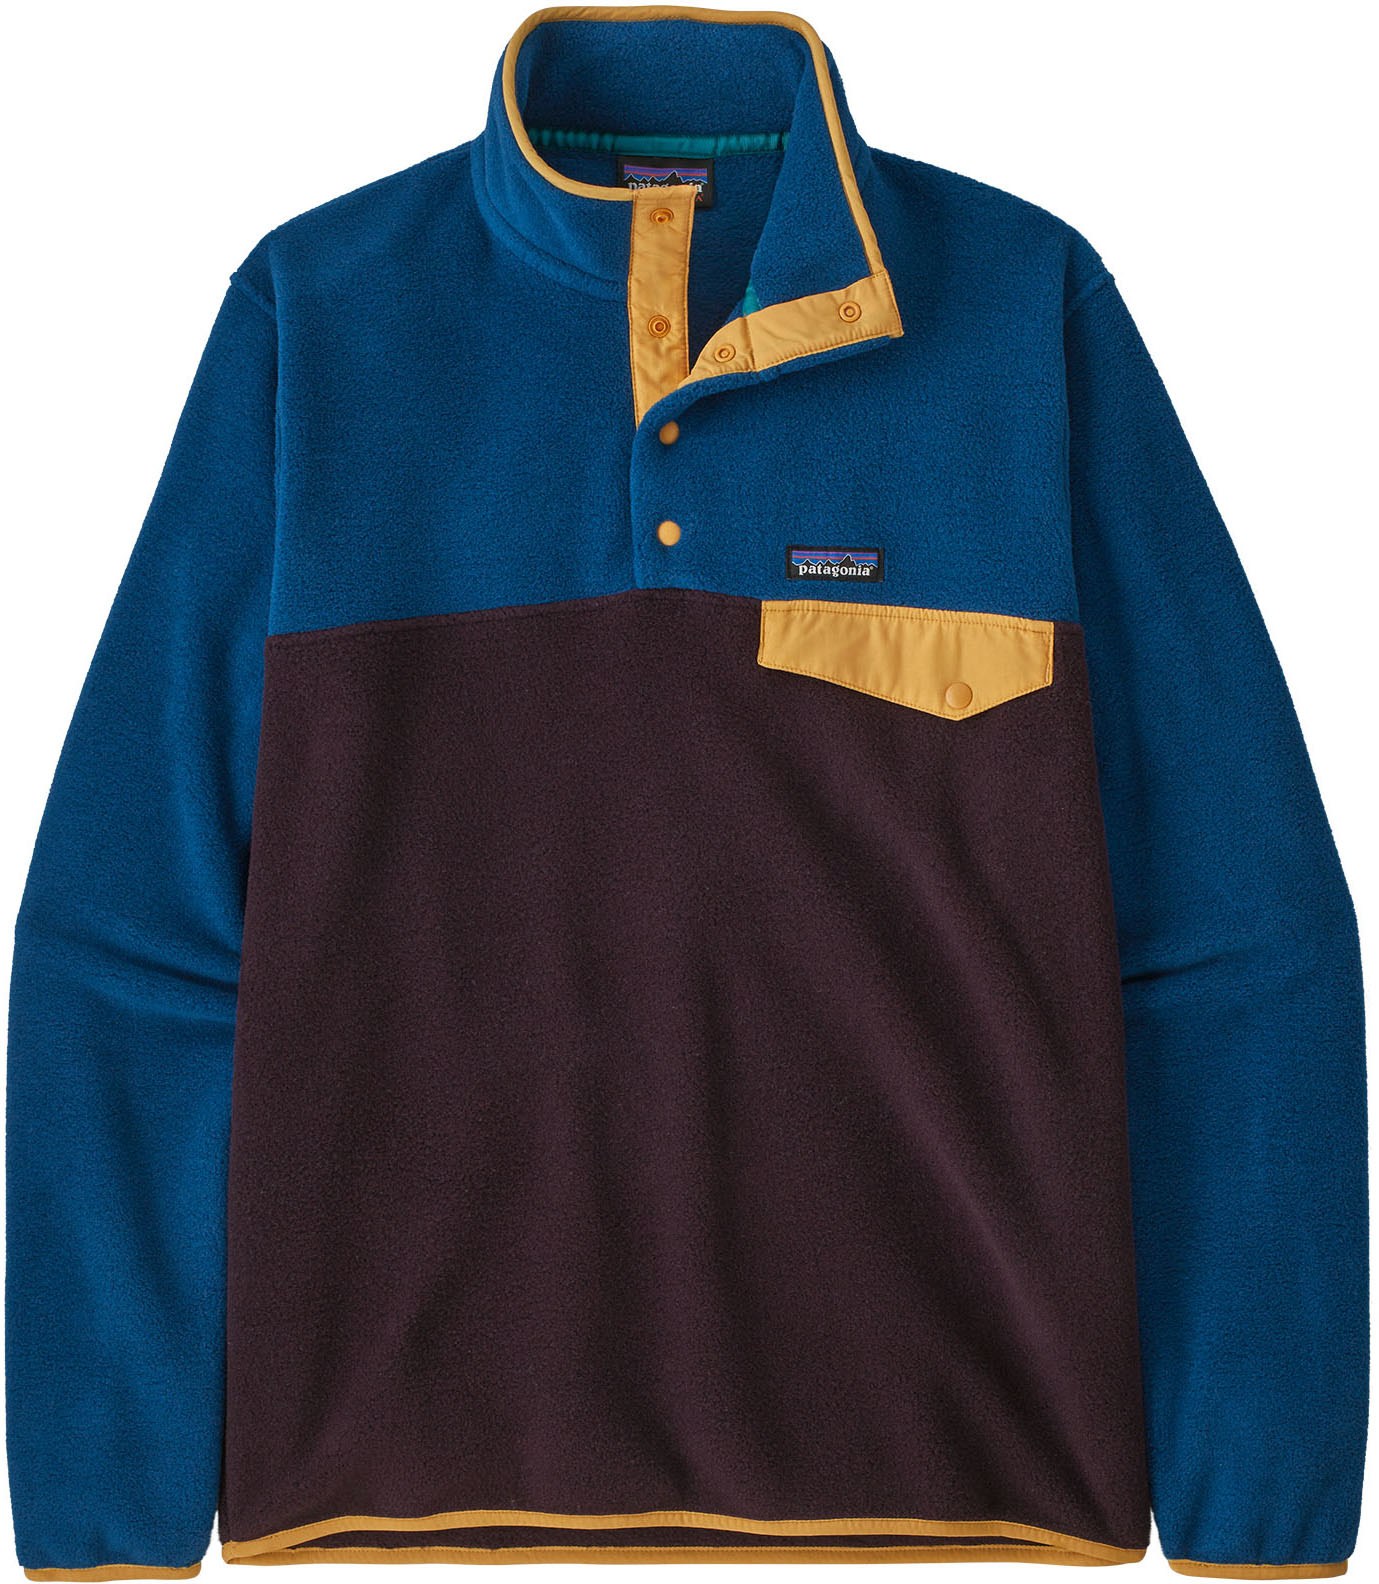 Легкий флисовый пуловер Synchilla Snap-T — мужской Patagonia, фиолетовый